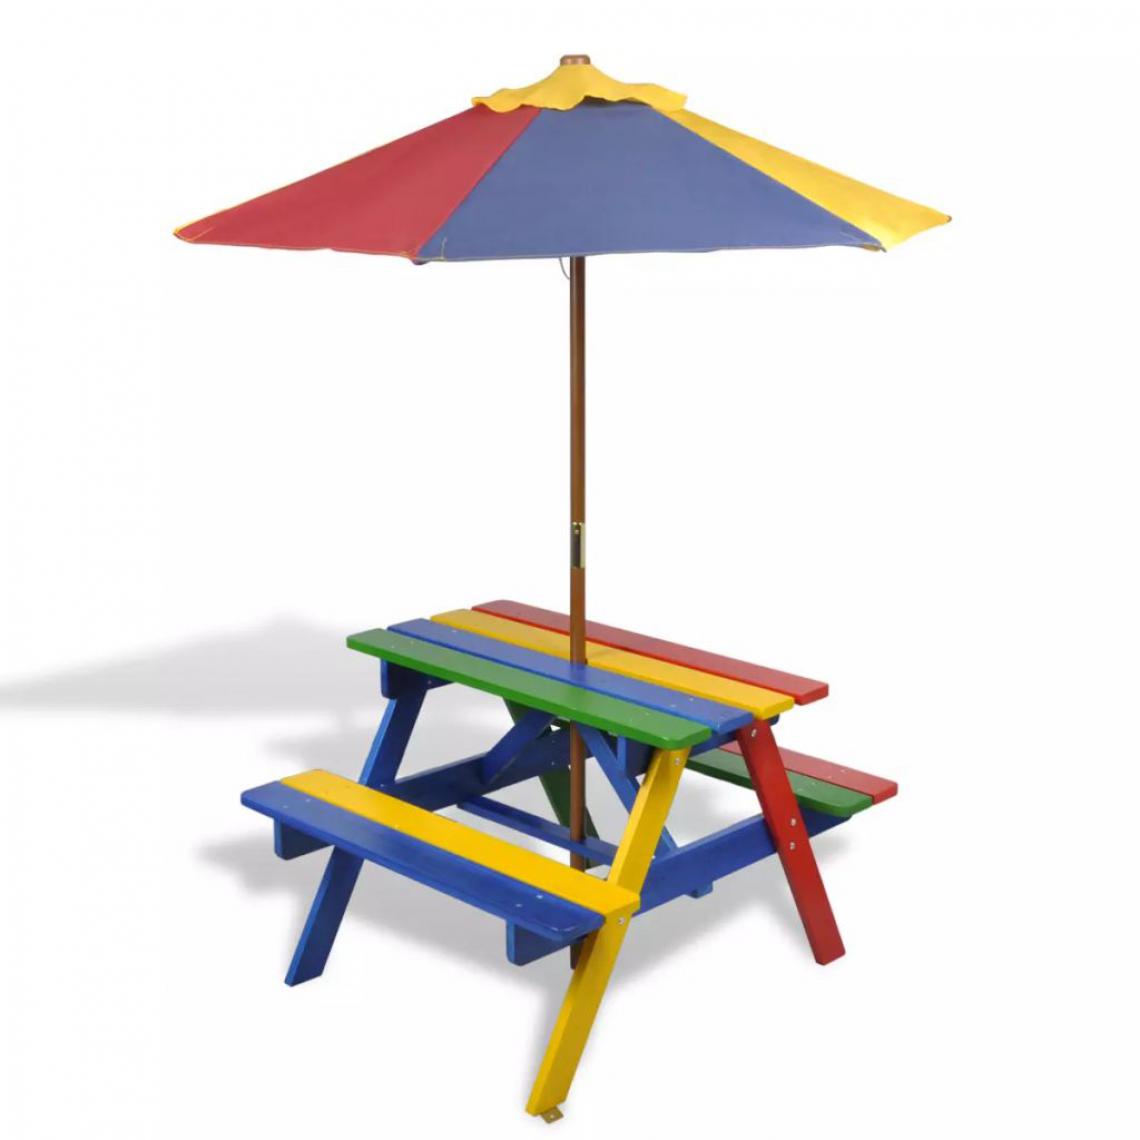 Vidaxl - Table de pique-nique enfant en quatre couleurs avec parasol - Multicolore - Ensembles canapés et fauteuils